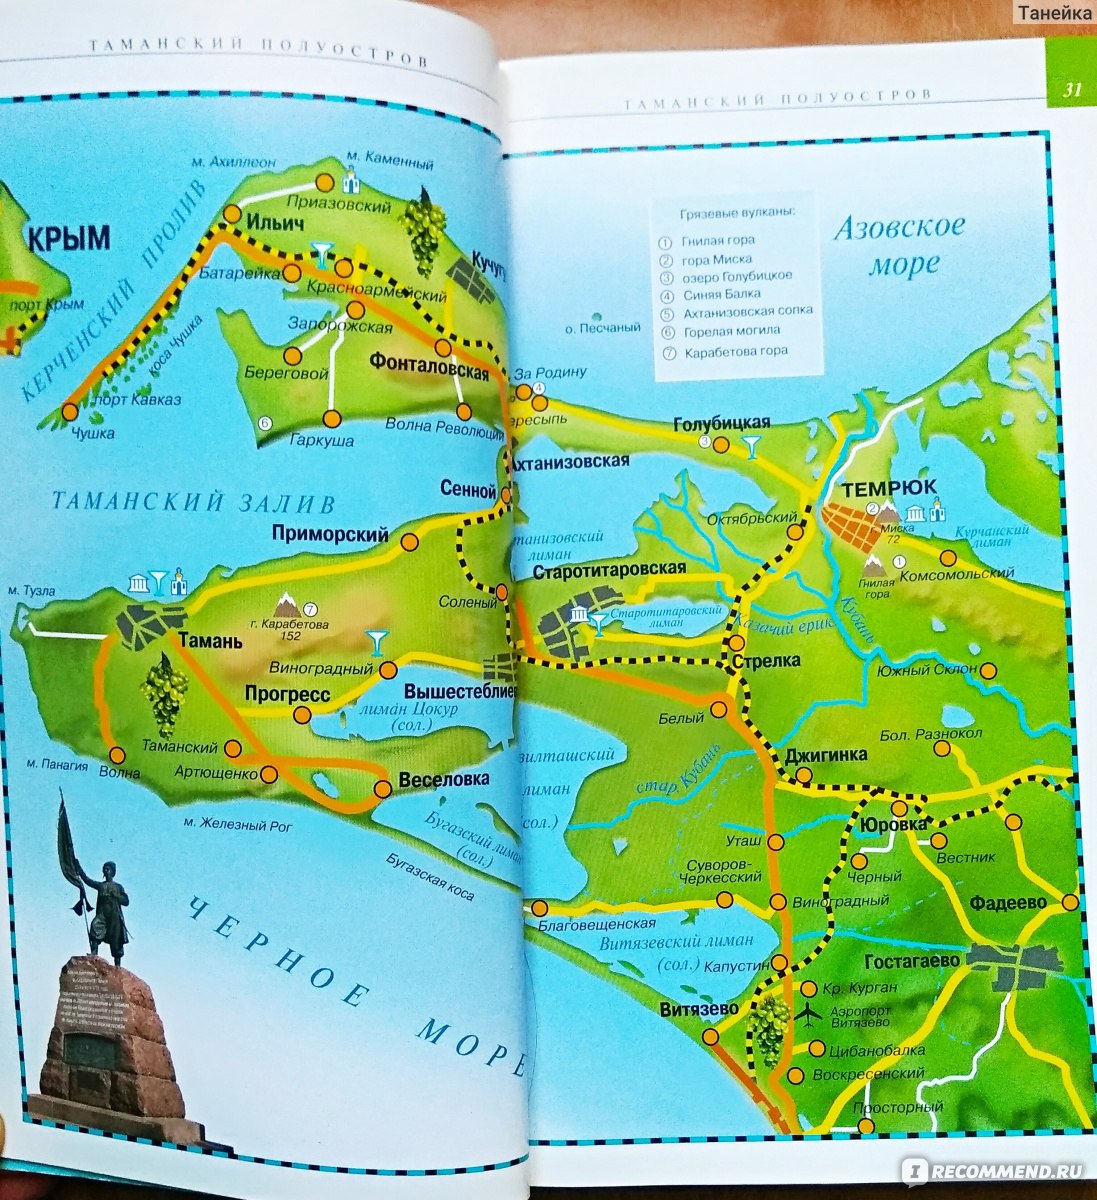 достопримечательности тамани на карте с описанием